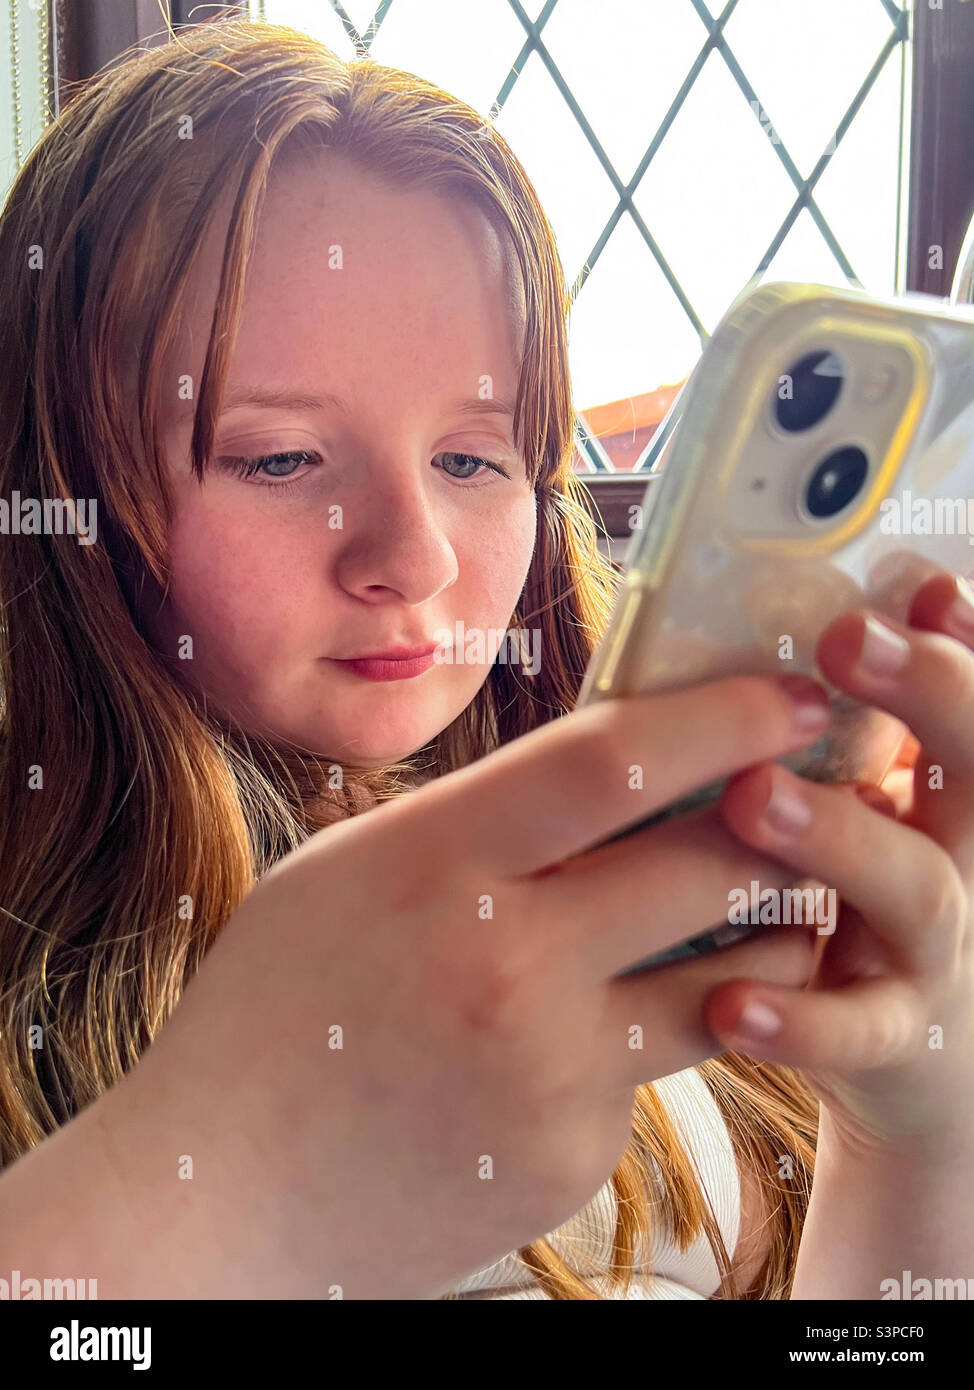 Une jeune fille s'est engagée à jouer avec son iphone Banque D'Images